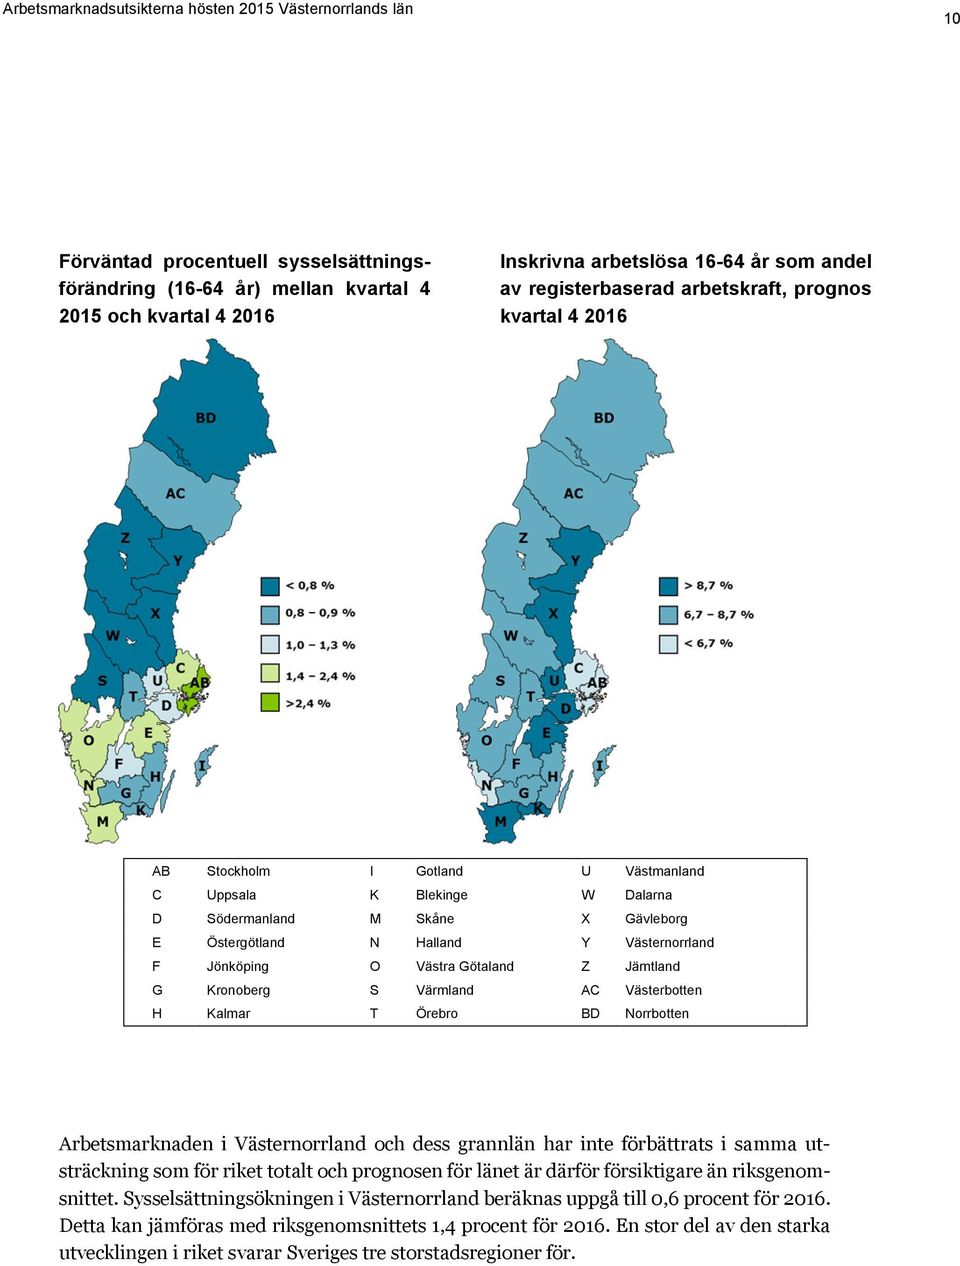 Värmland AC Västerbotten H Kalmar T Örebro BD Norrbotten Arbetsmarknaden i Västernorrland och dess grannlän har inte förbättrats i samma utsträckning som för riket totalt och prognosen för länet är